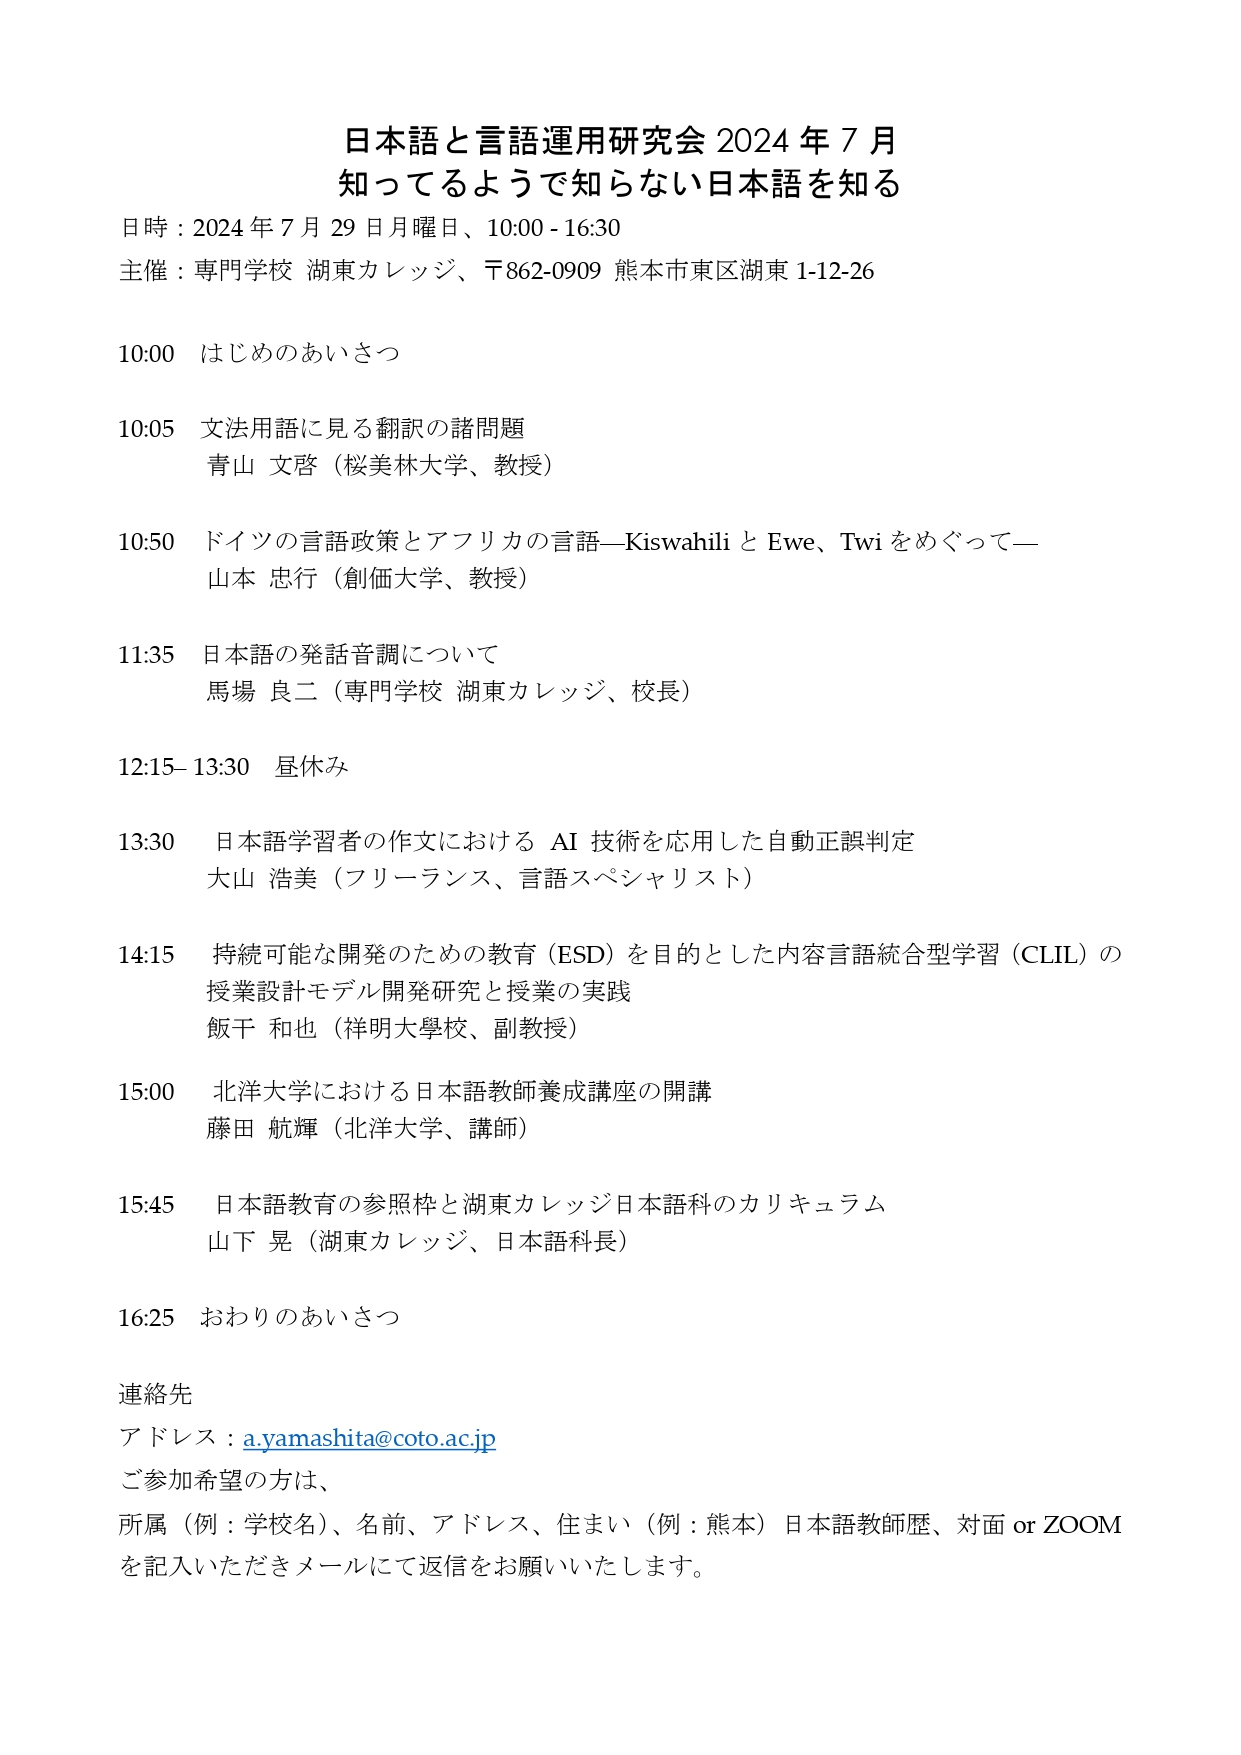 2024年7月29日研究会_プログラム_page-0001.jpg